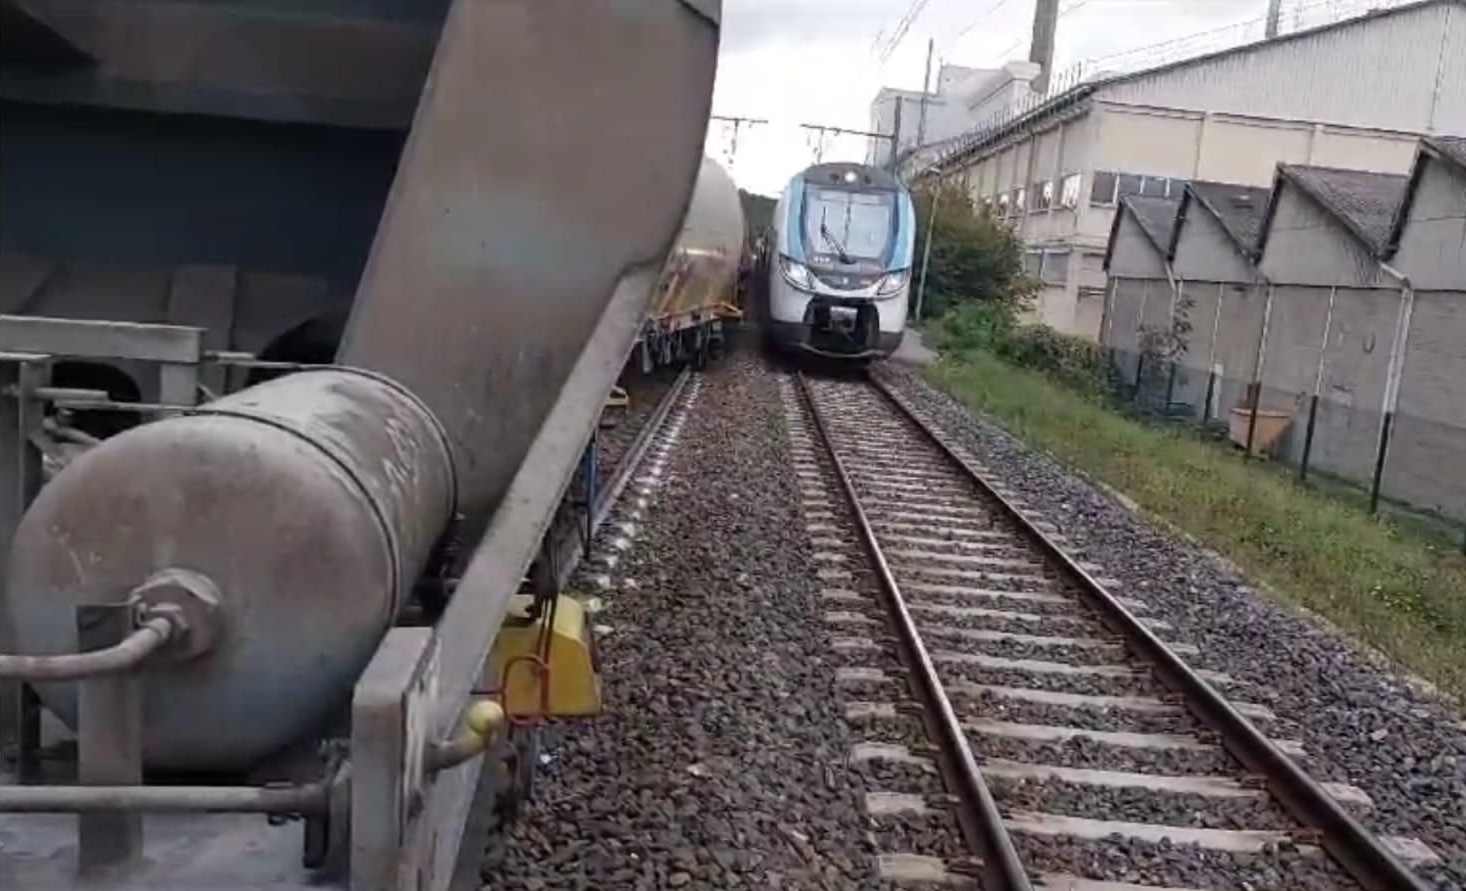 Bagneaux-sur-Loing (Seine-et-Marne), le 21 octobre. Un train de marchandises a déraillé samedi. Depuis, le trafic est perturbé et ce pour au moins une semaine. DR